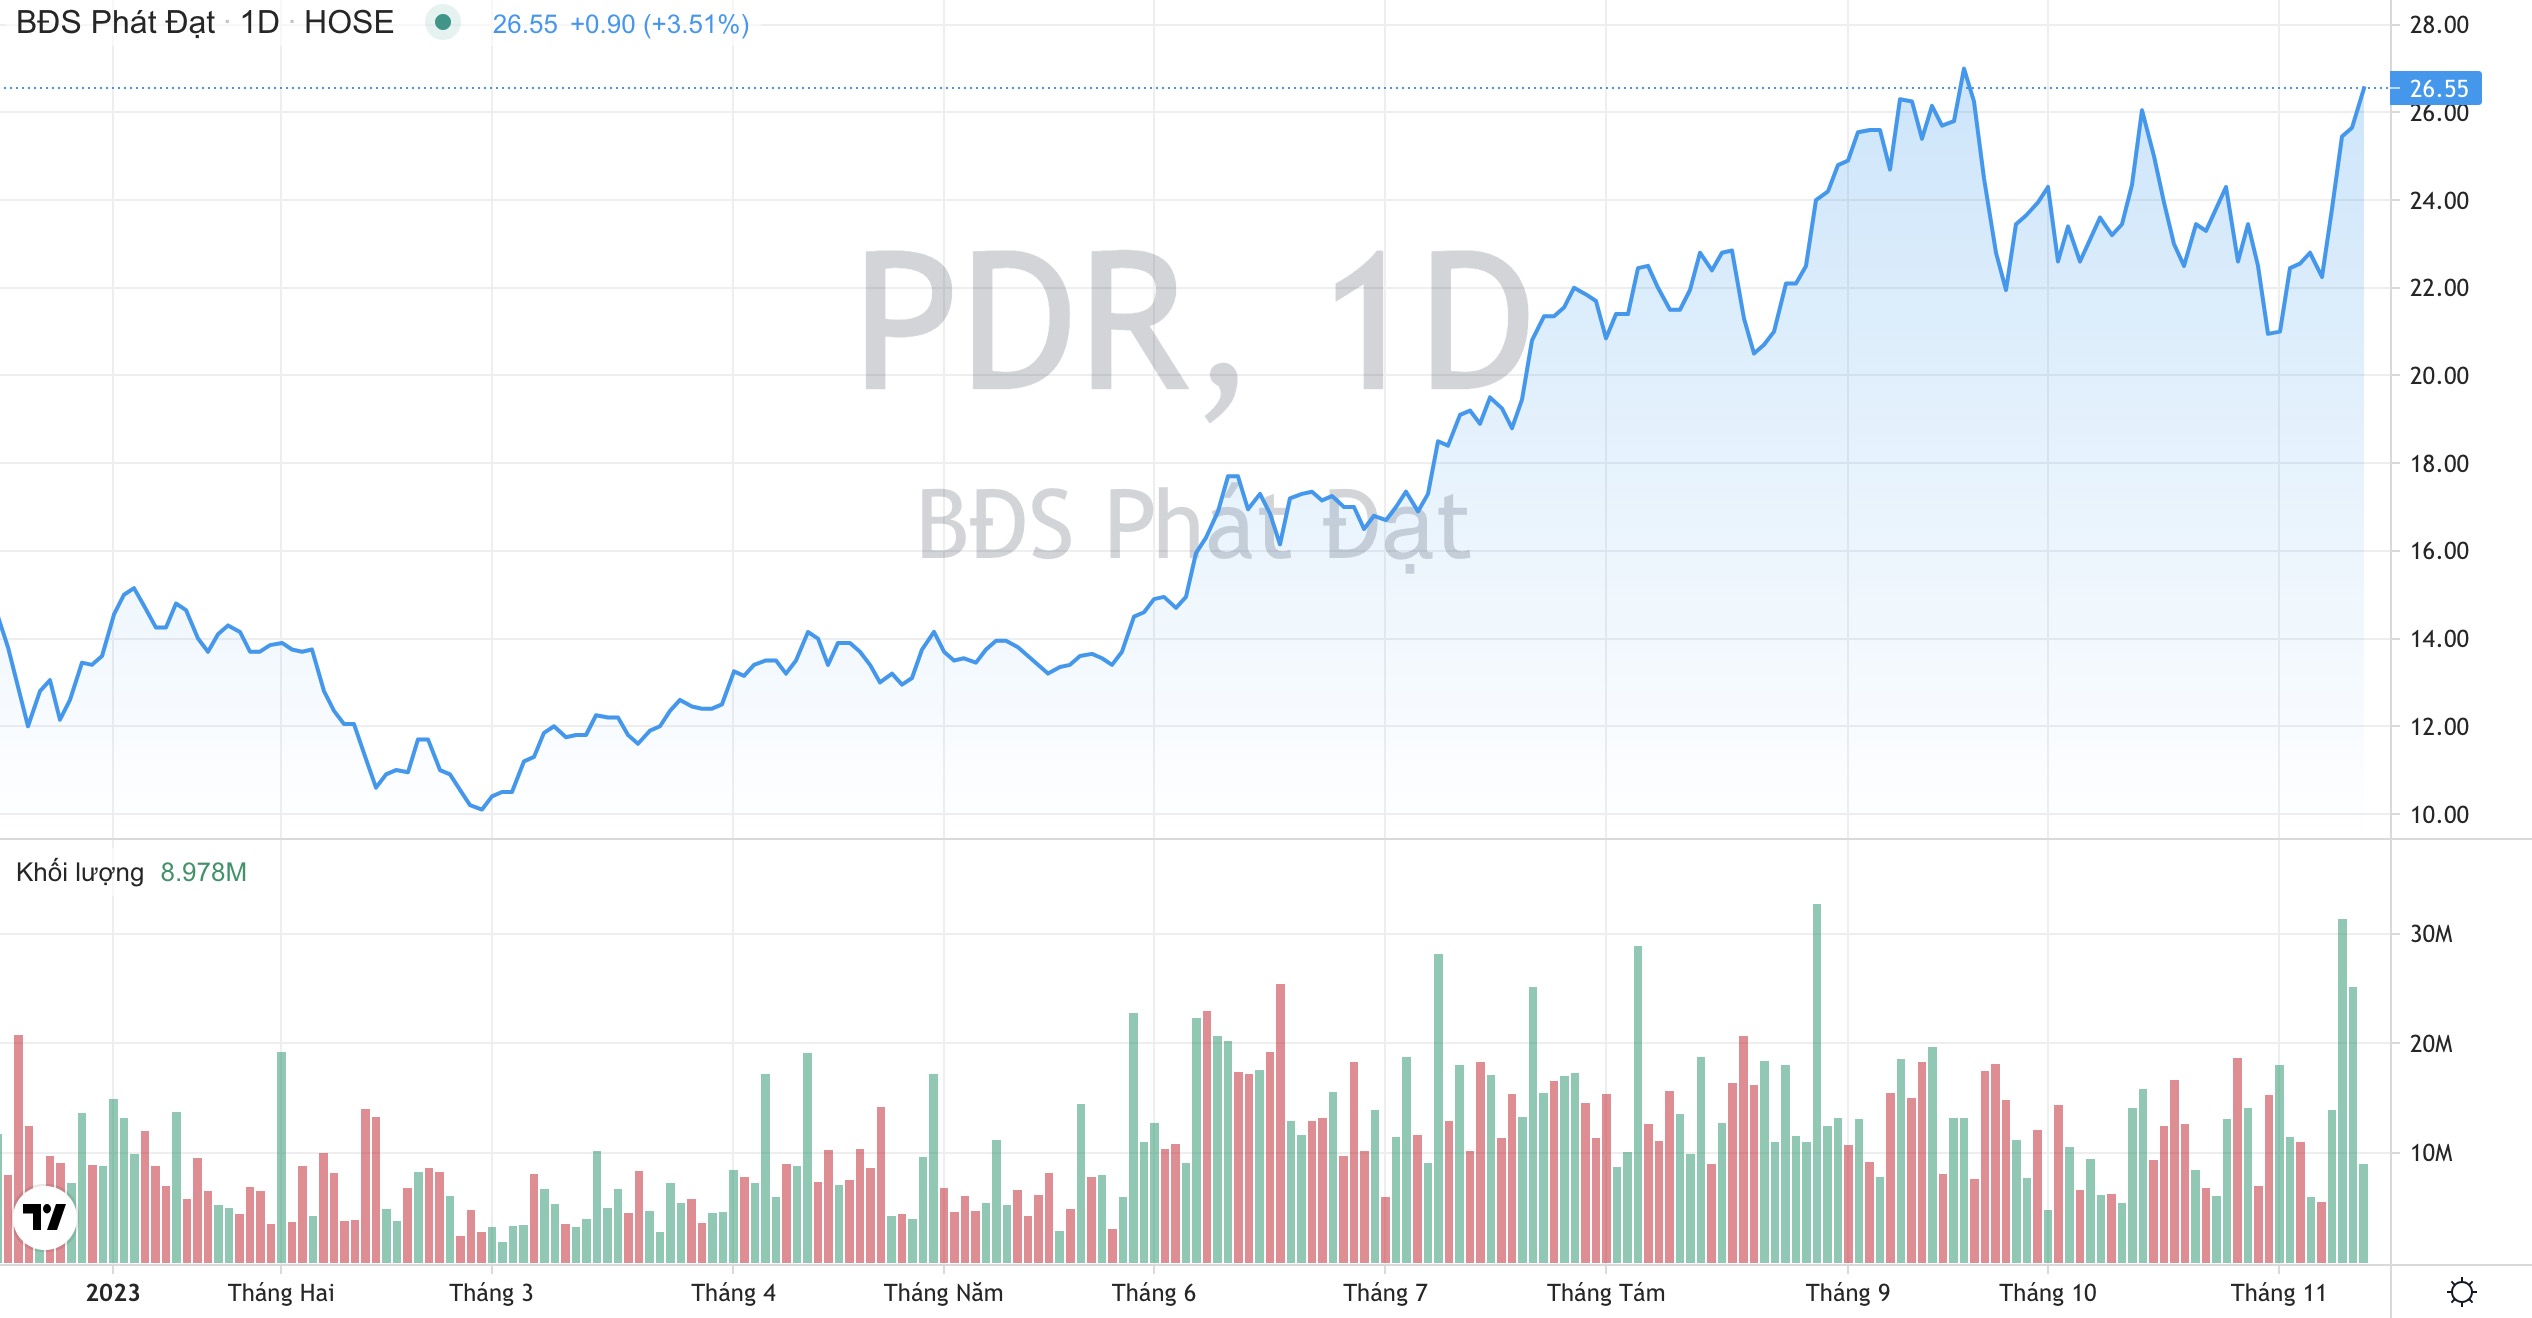 Bất động sản Phát Đạt triển khai dự án 2.300 tỷ, cổ phiếu PDR lên đỉnh 1 năm 3